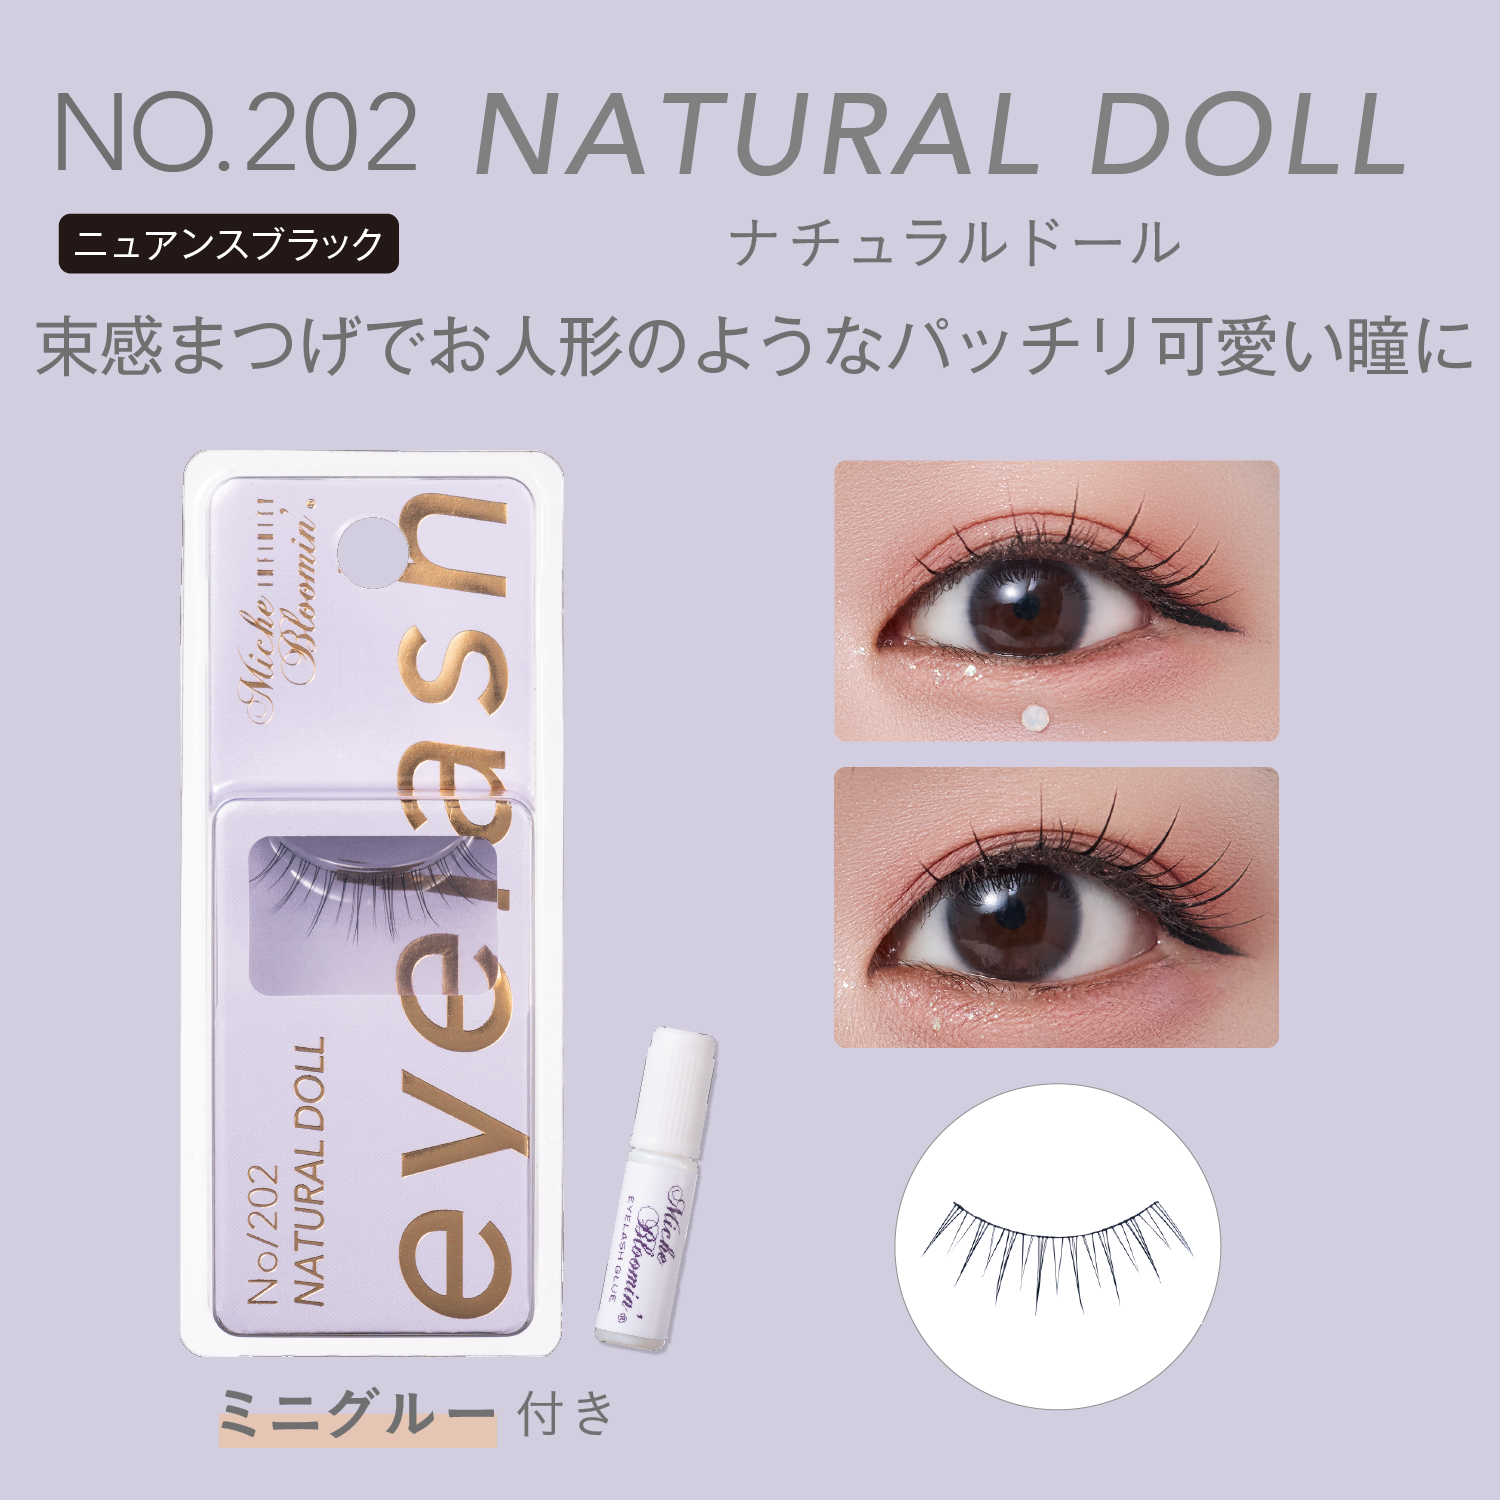 NO.202 Natural doll